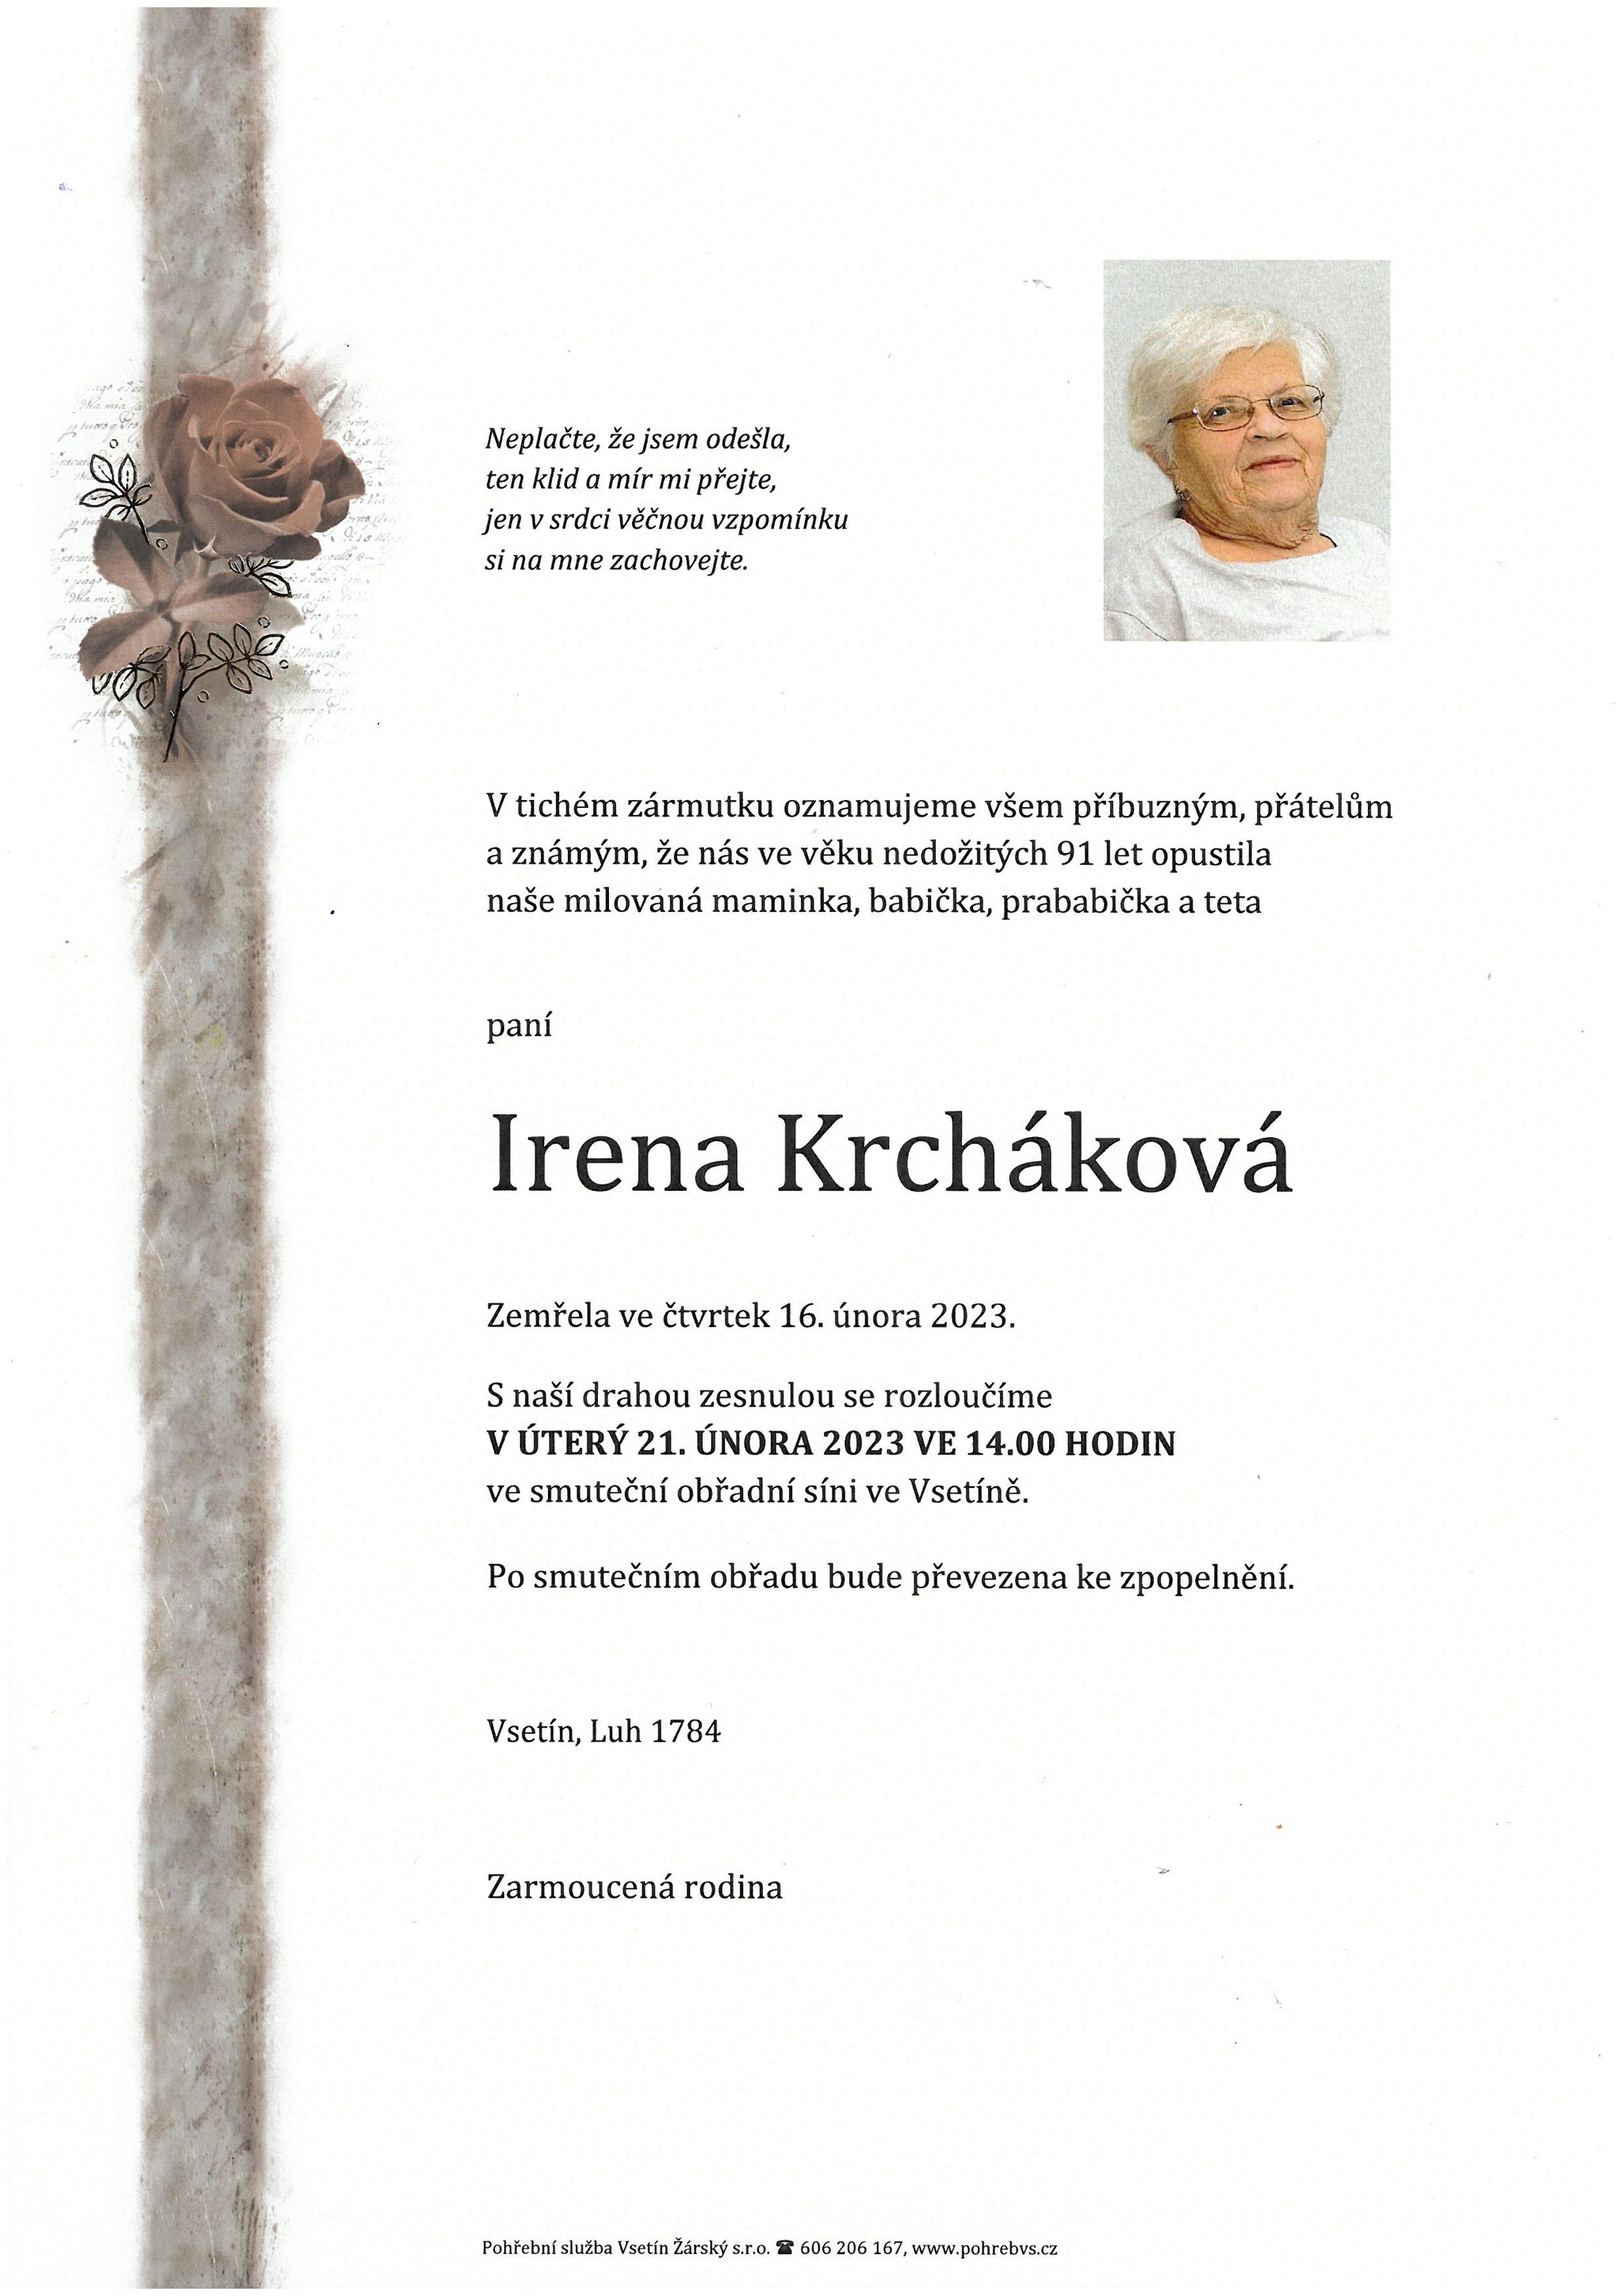 Irena Krcháková